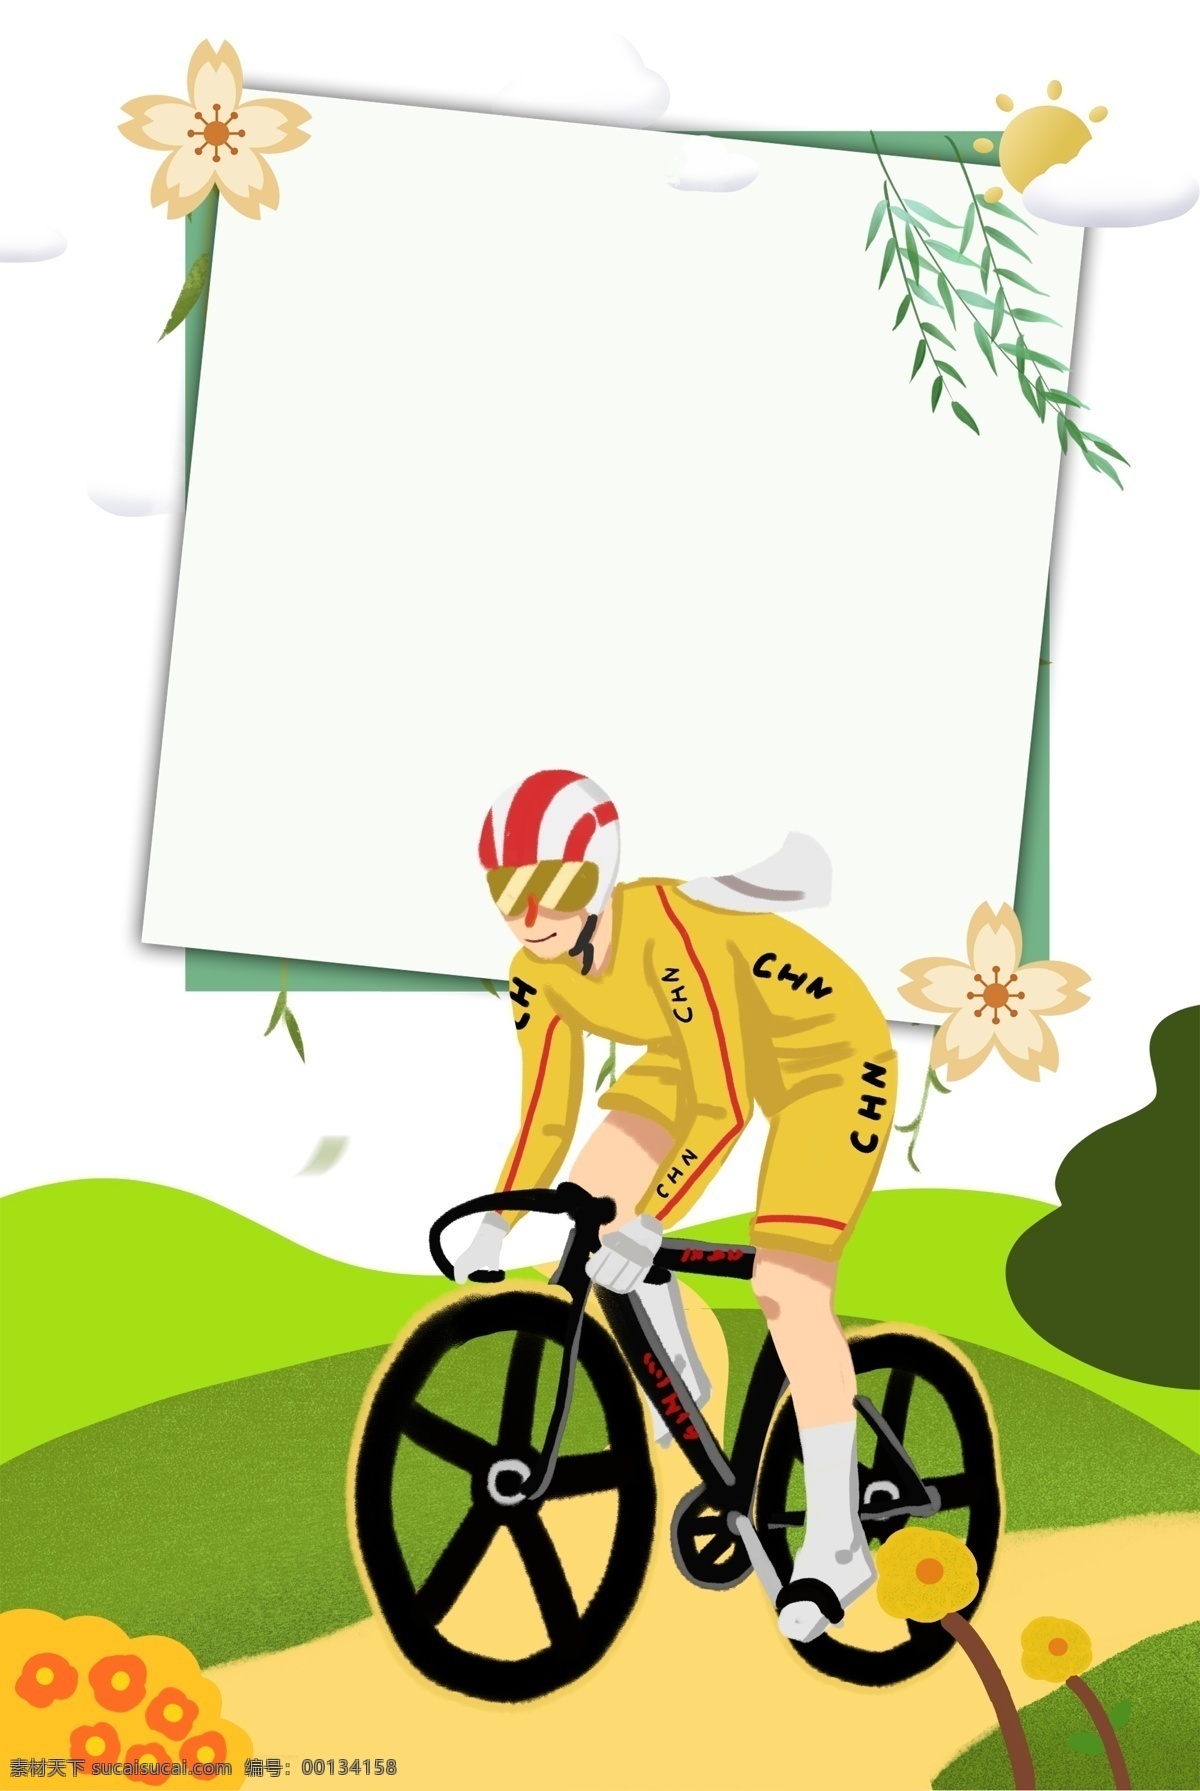 全民 山地 自行车运动 方框 背景 全民运动 健康 健身 山地自行车 太阳 云朵 远山 树叶 简约 手绘